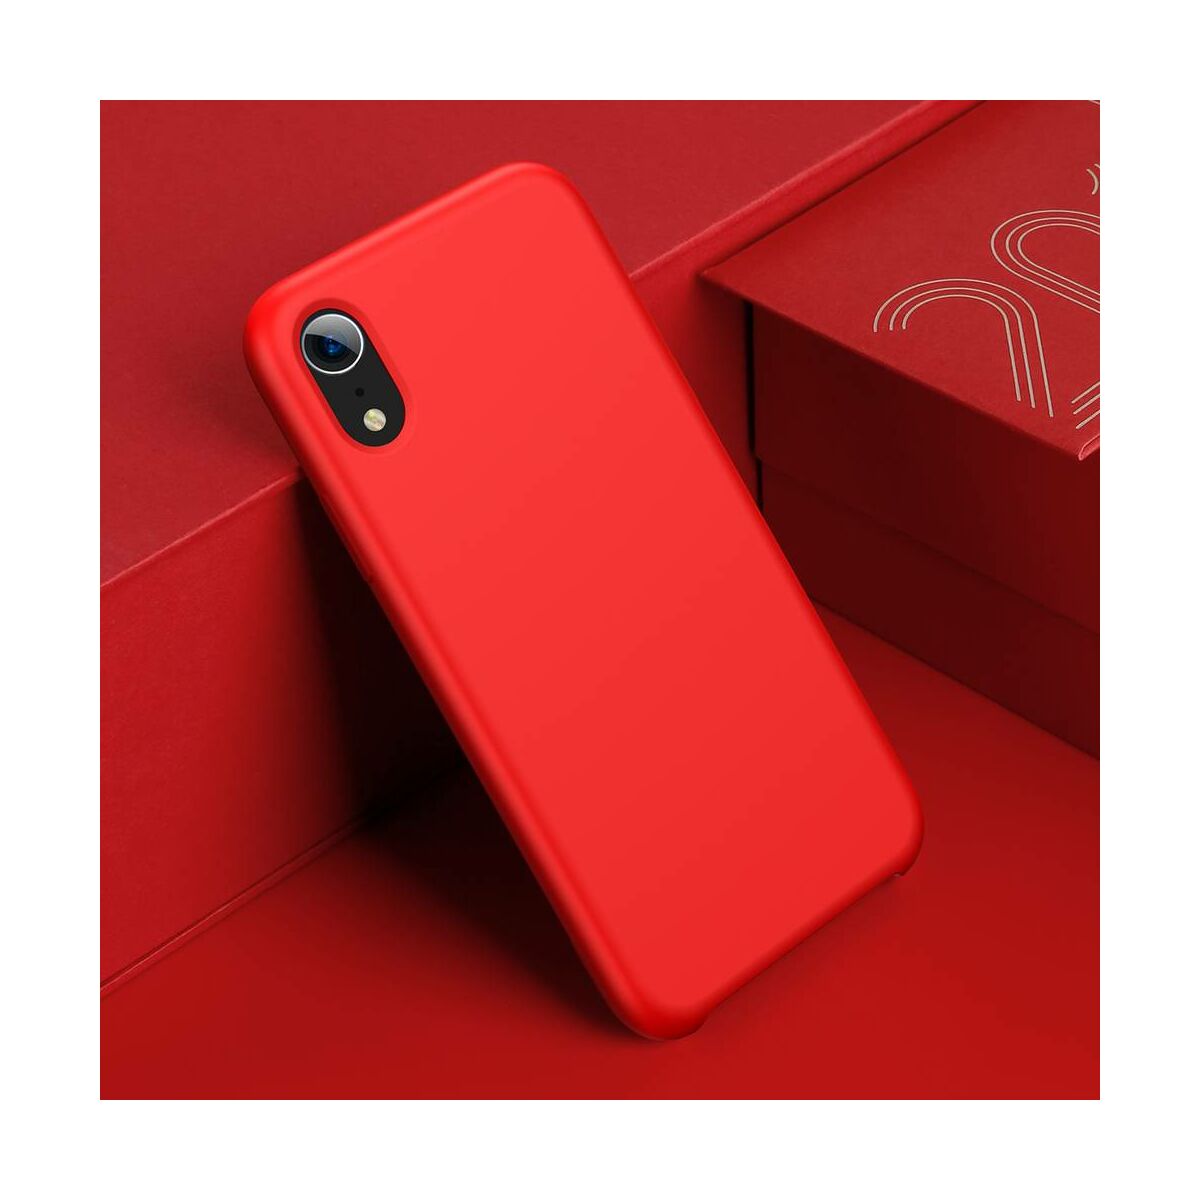 Kép 8/8 - Baseus iPhone XR tok, Original LSR, piros (WIAPIPH61-ASL09)